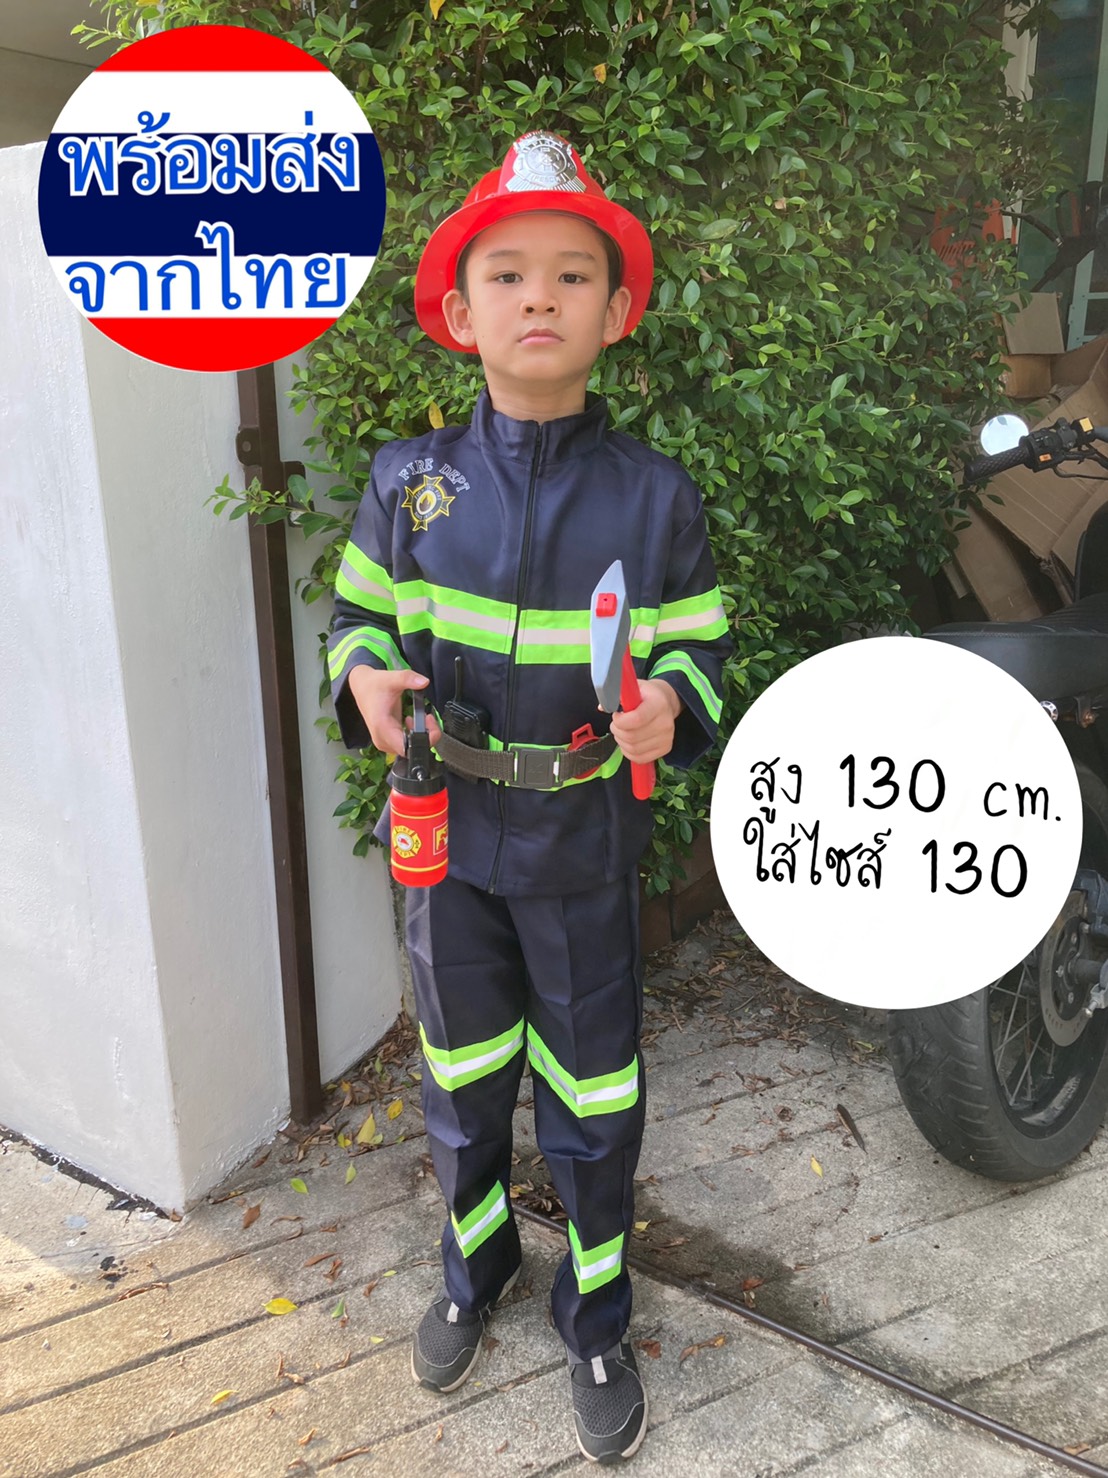 ชุดอาชีพเด็ก ชุดนักดับเพลิงสำหรับเด็ก ชุดดับเพลิง พร้อมอุปกรณ์ครบ